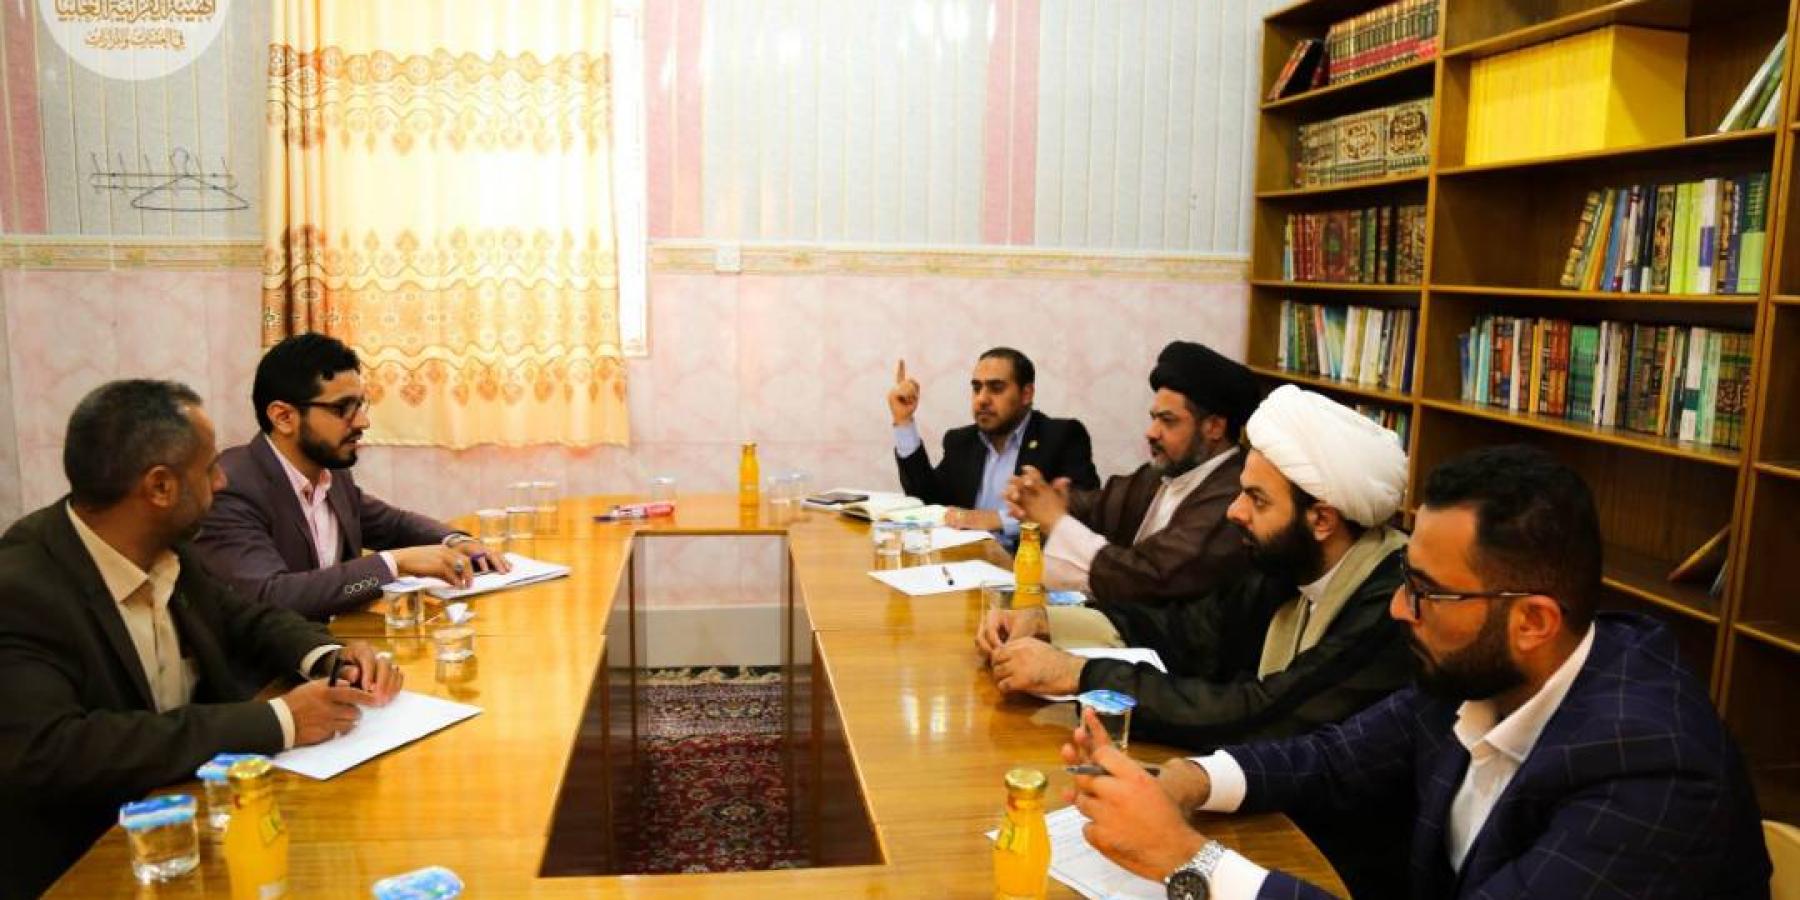 معهد الإمام علي (ع) في العتبة العلوية يرعى اجتماع الهيئة القرآنية العليا في العتبات والمزارات 